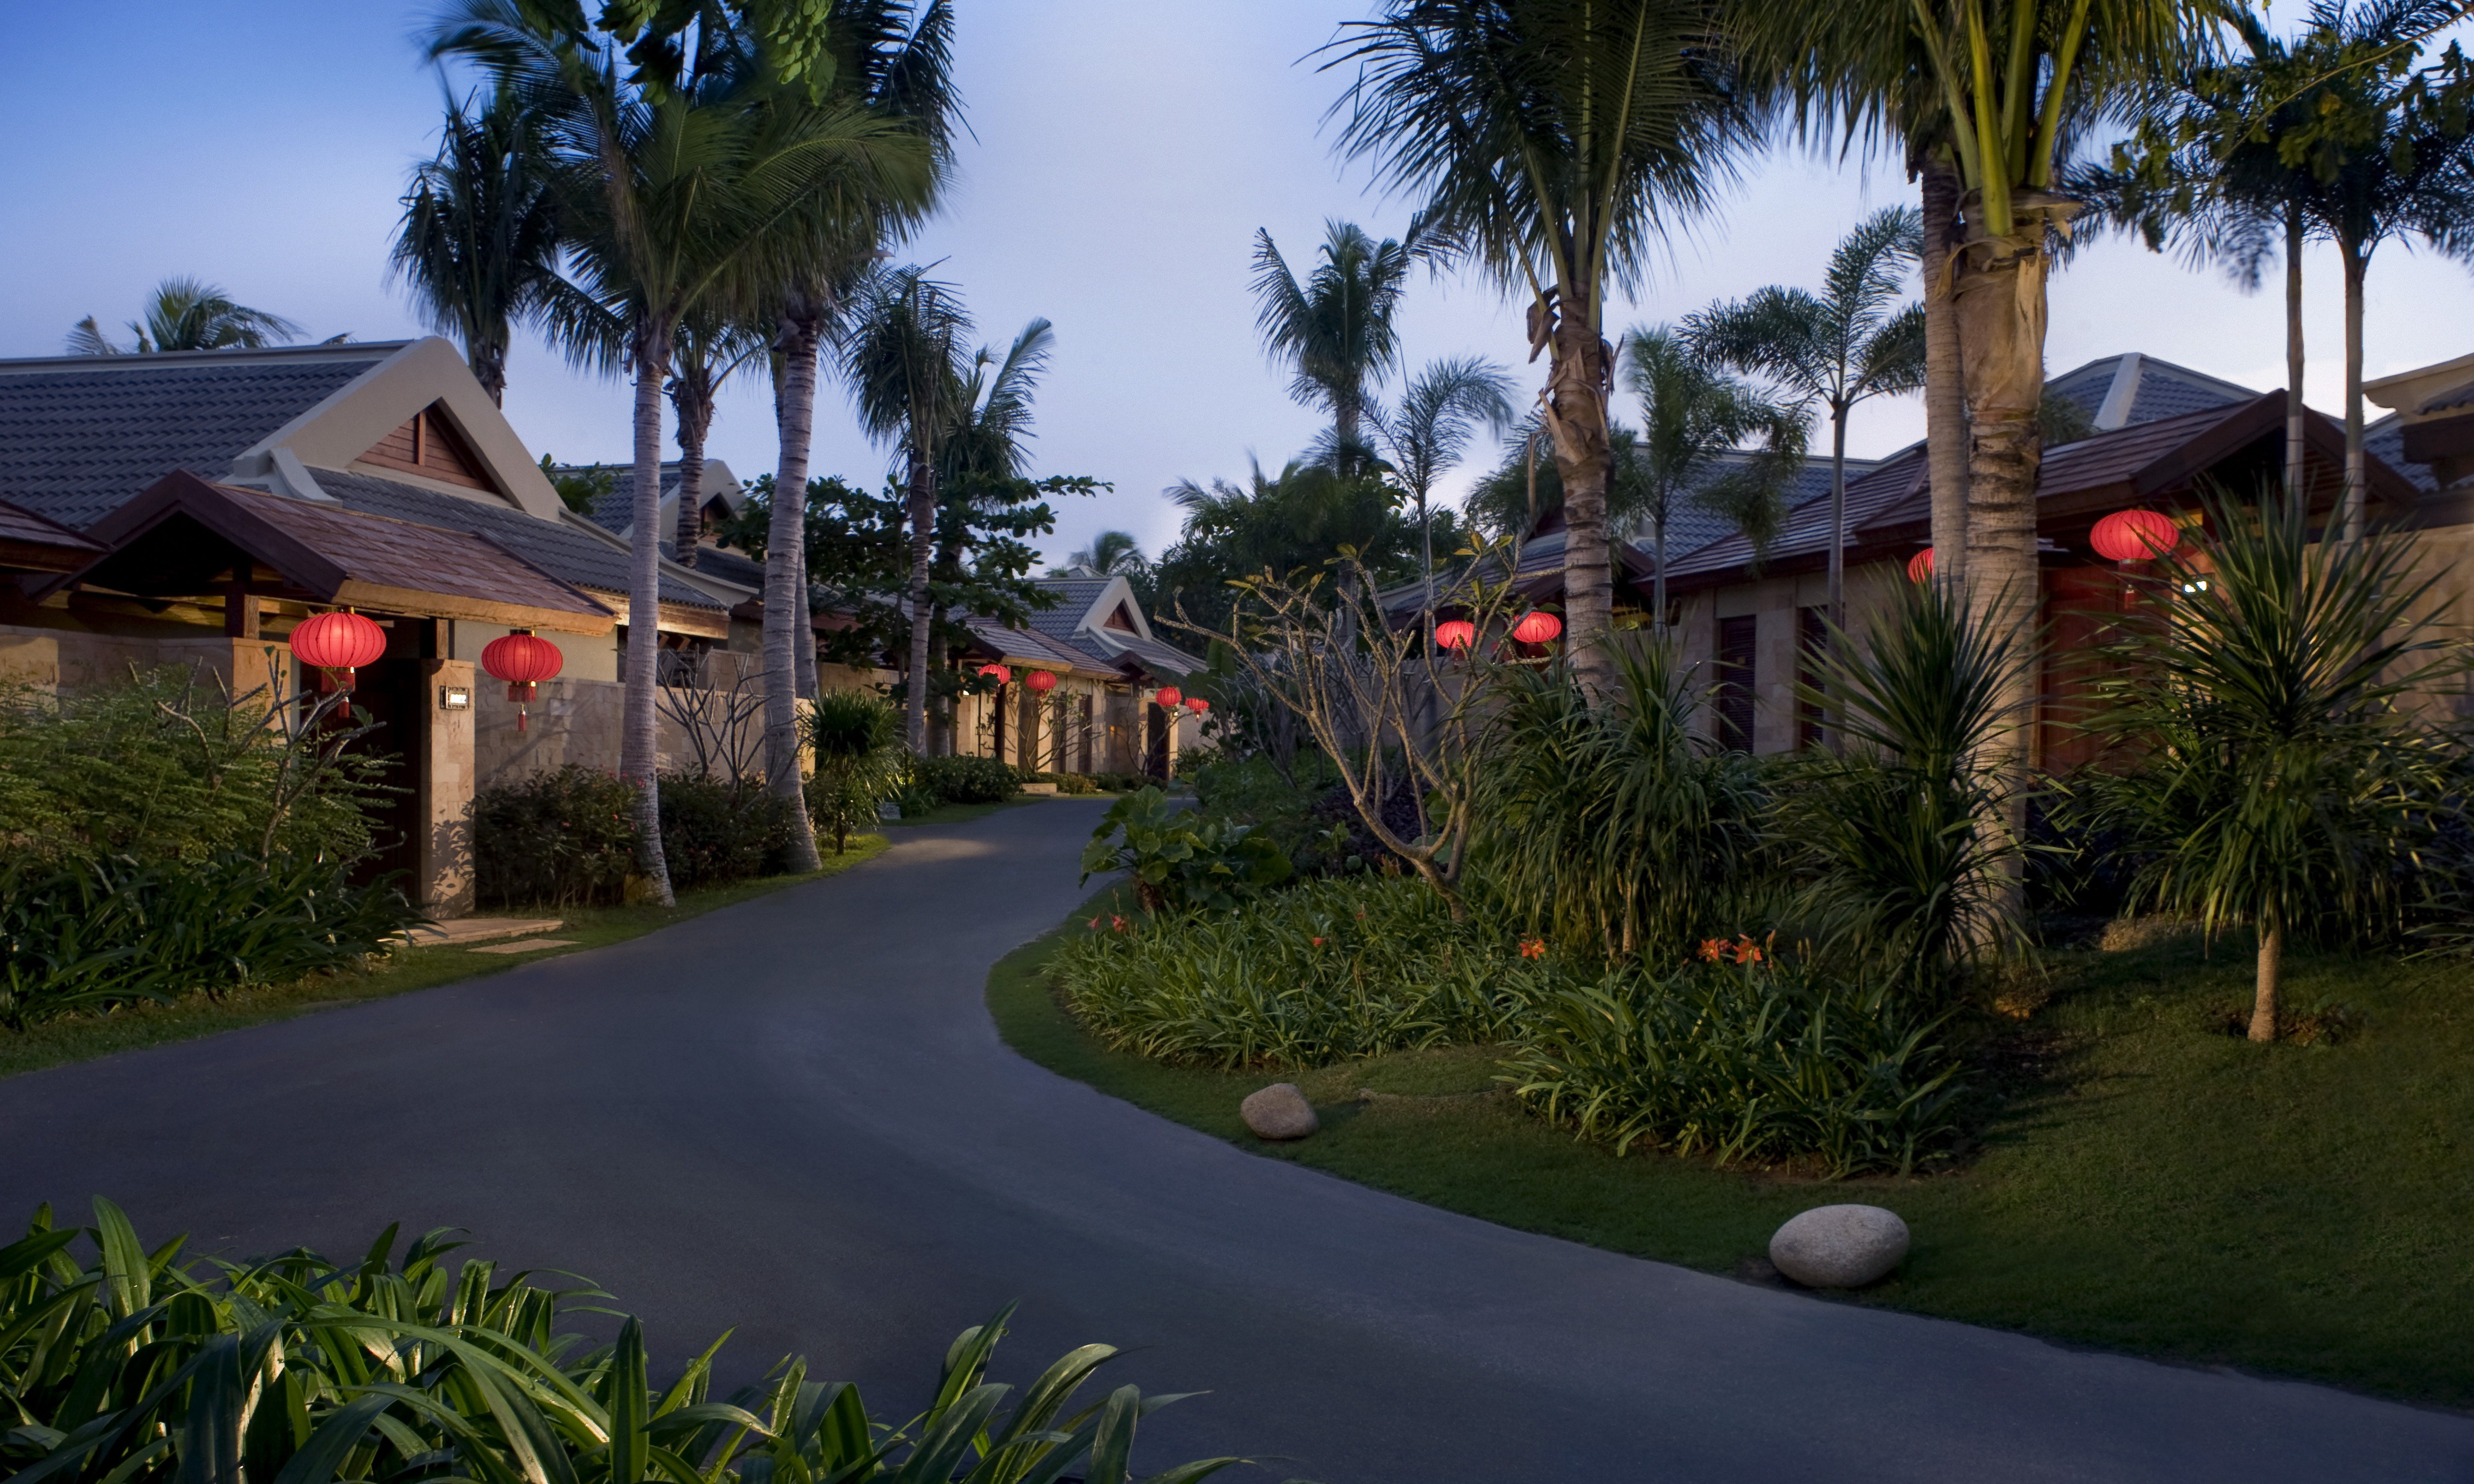 金茂三亚亚龙湾丽思卡尔顿酒店于新春之际打造私密海岛体验